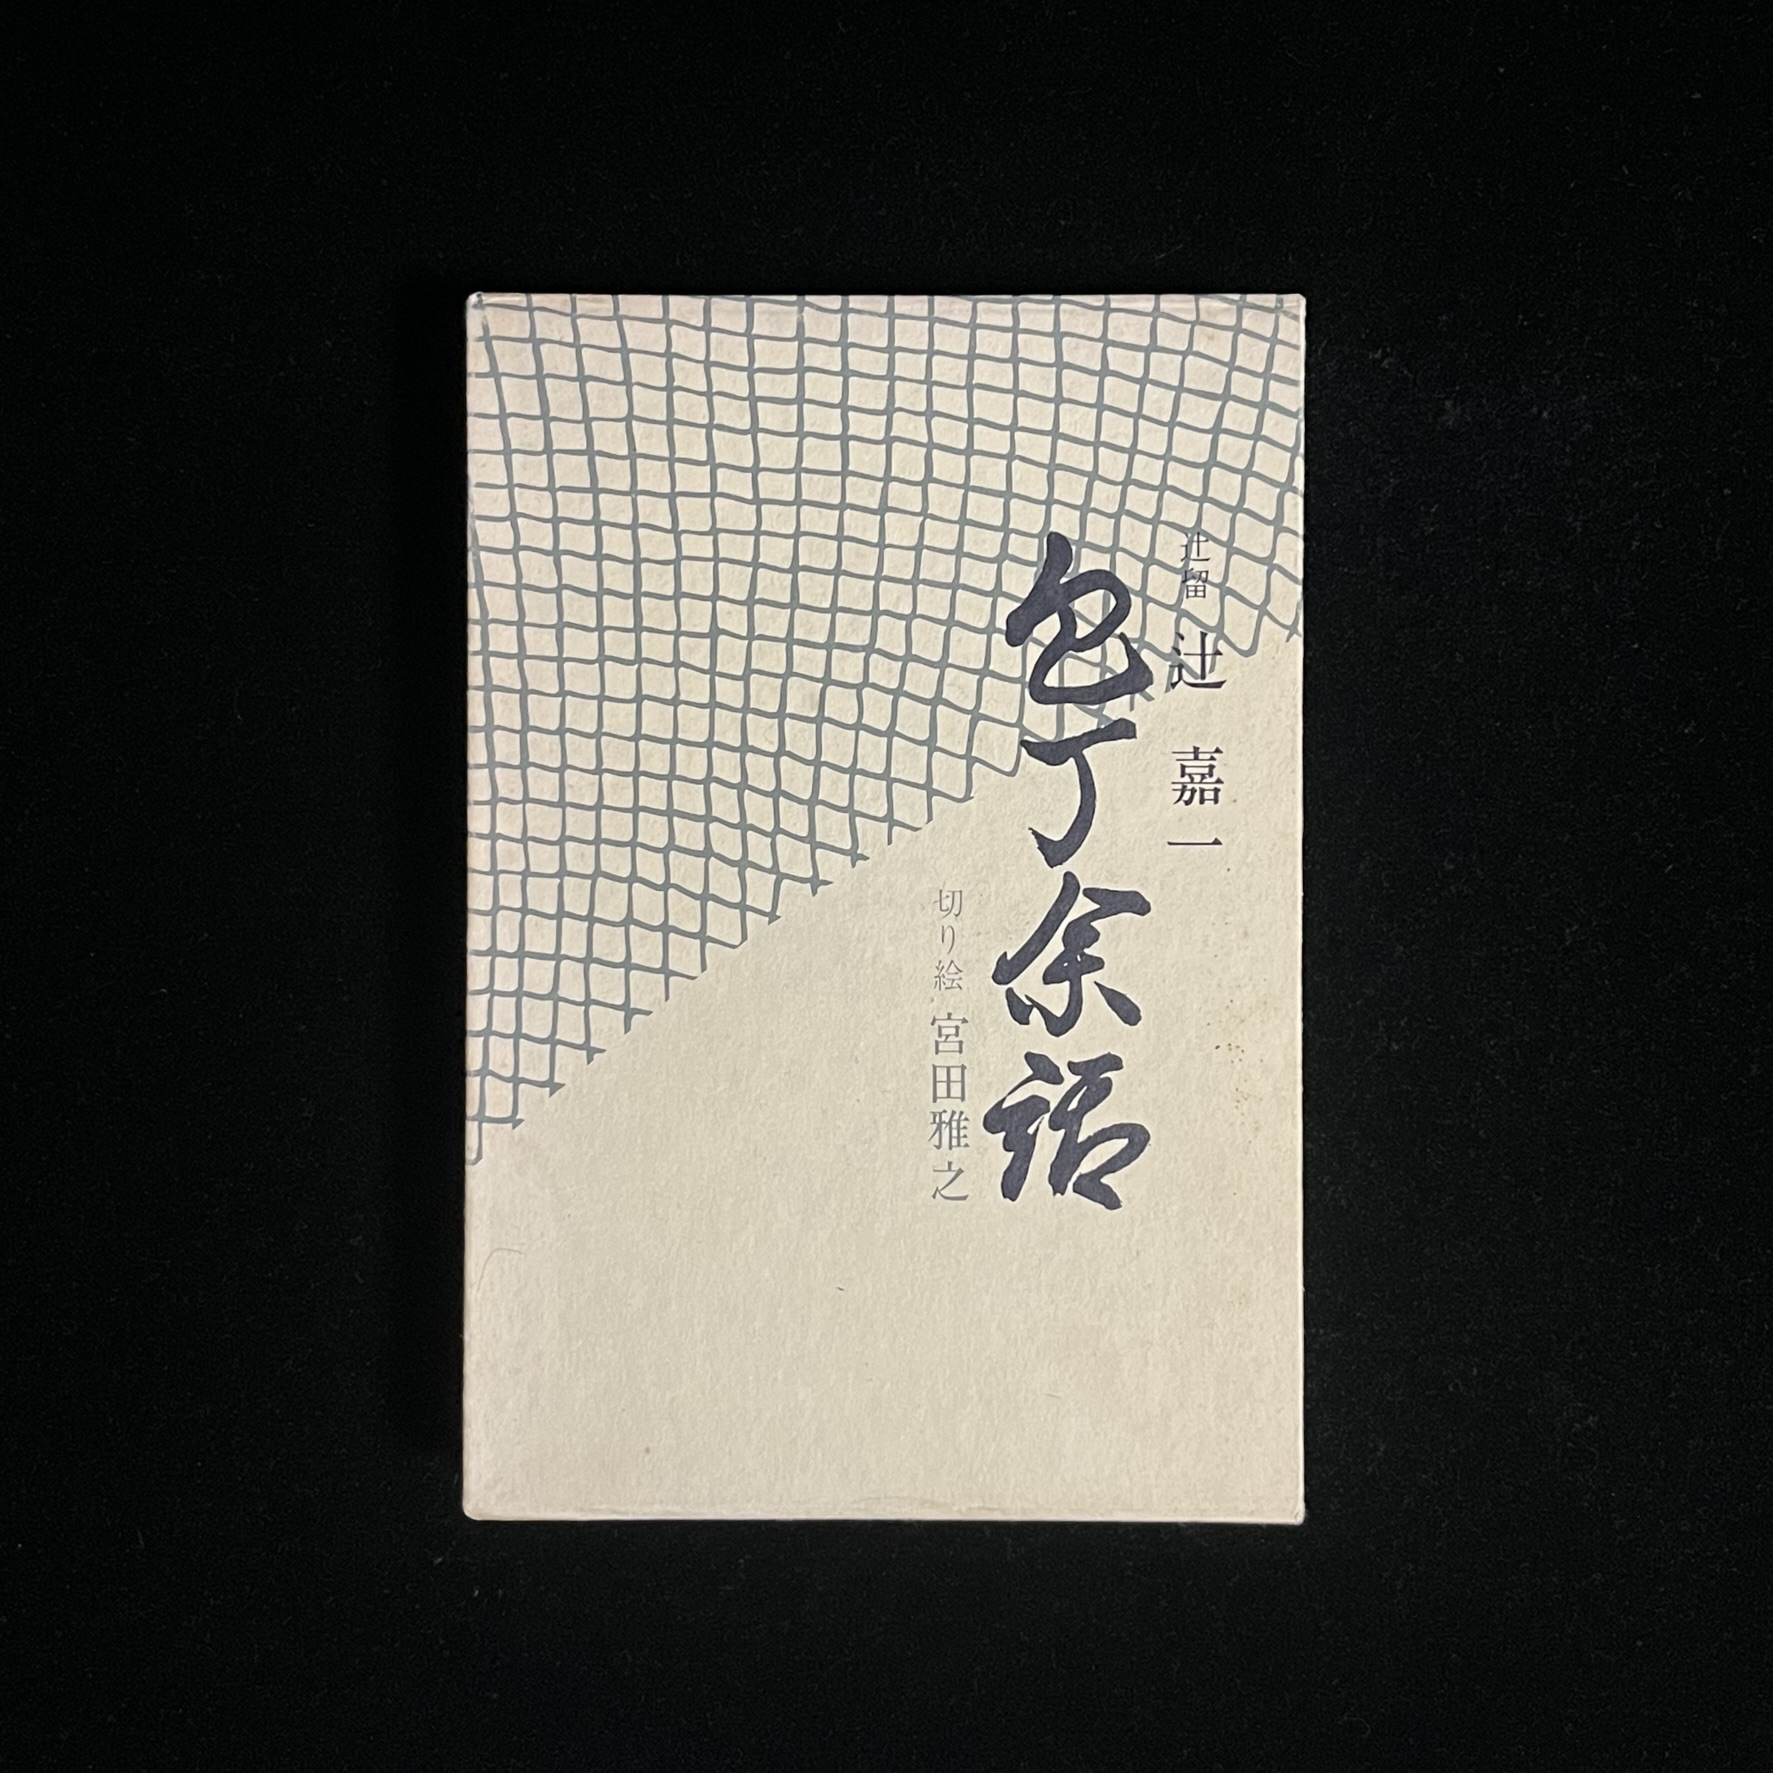 『包丁余話』の本の箱の写真。漁に使う網の模様が表紙の半分に描かれています。裏表紙にはこの網に鯛がかかっている絵が描かれています。おそらく宮田雅之さん切り絵と思われます。